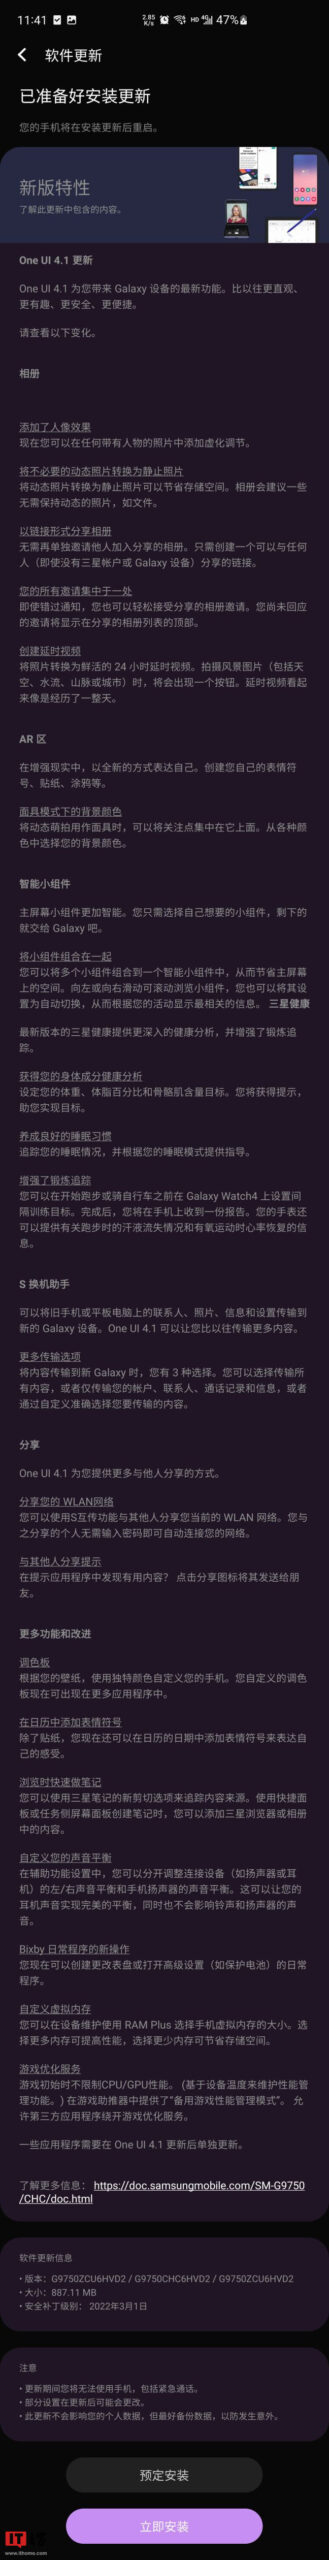 Samsung S10 series One UI 4.1 update changelog